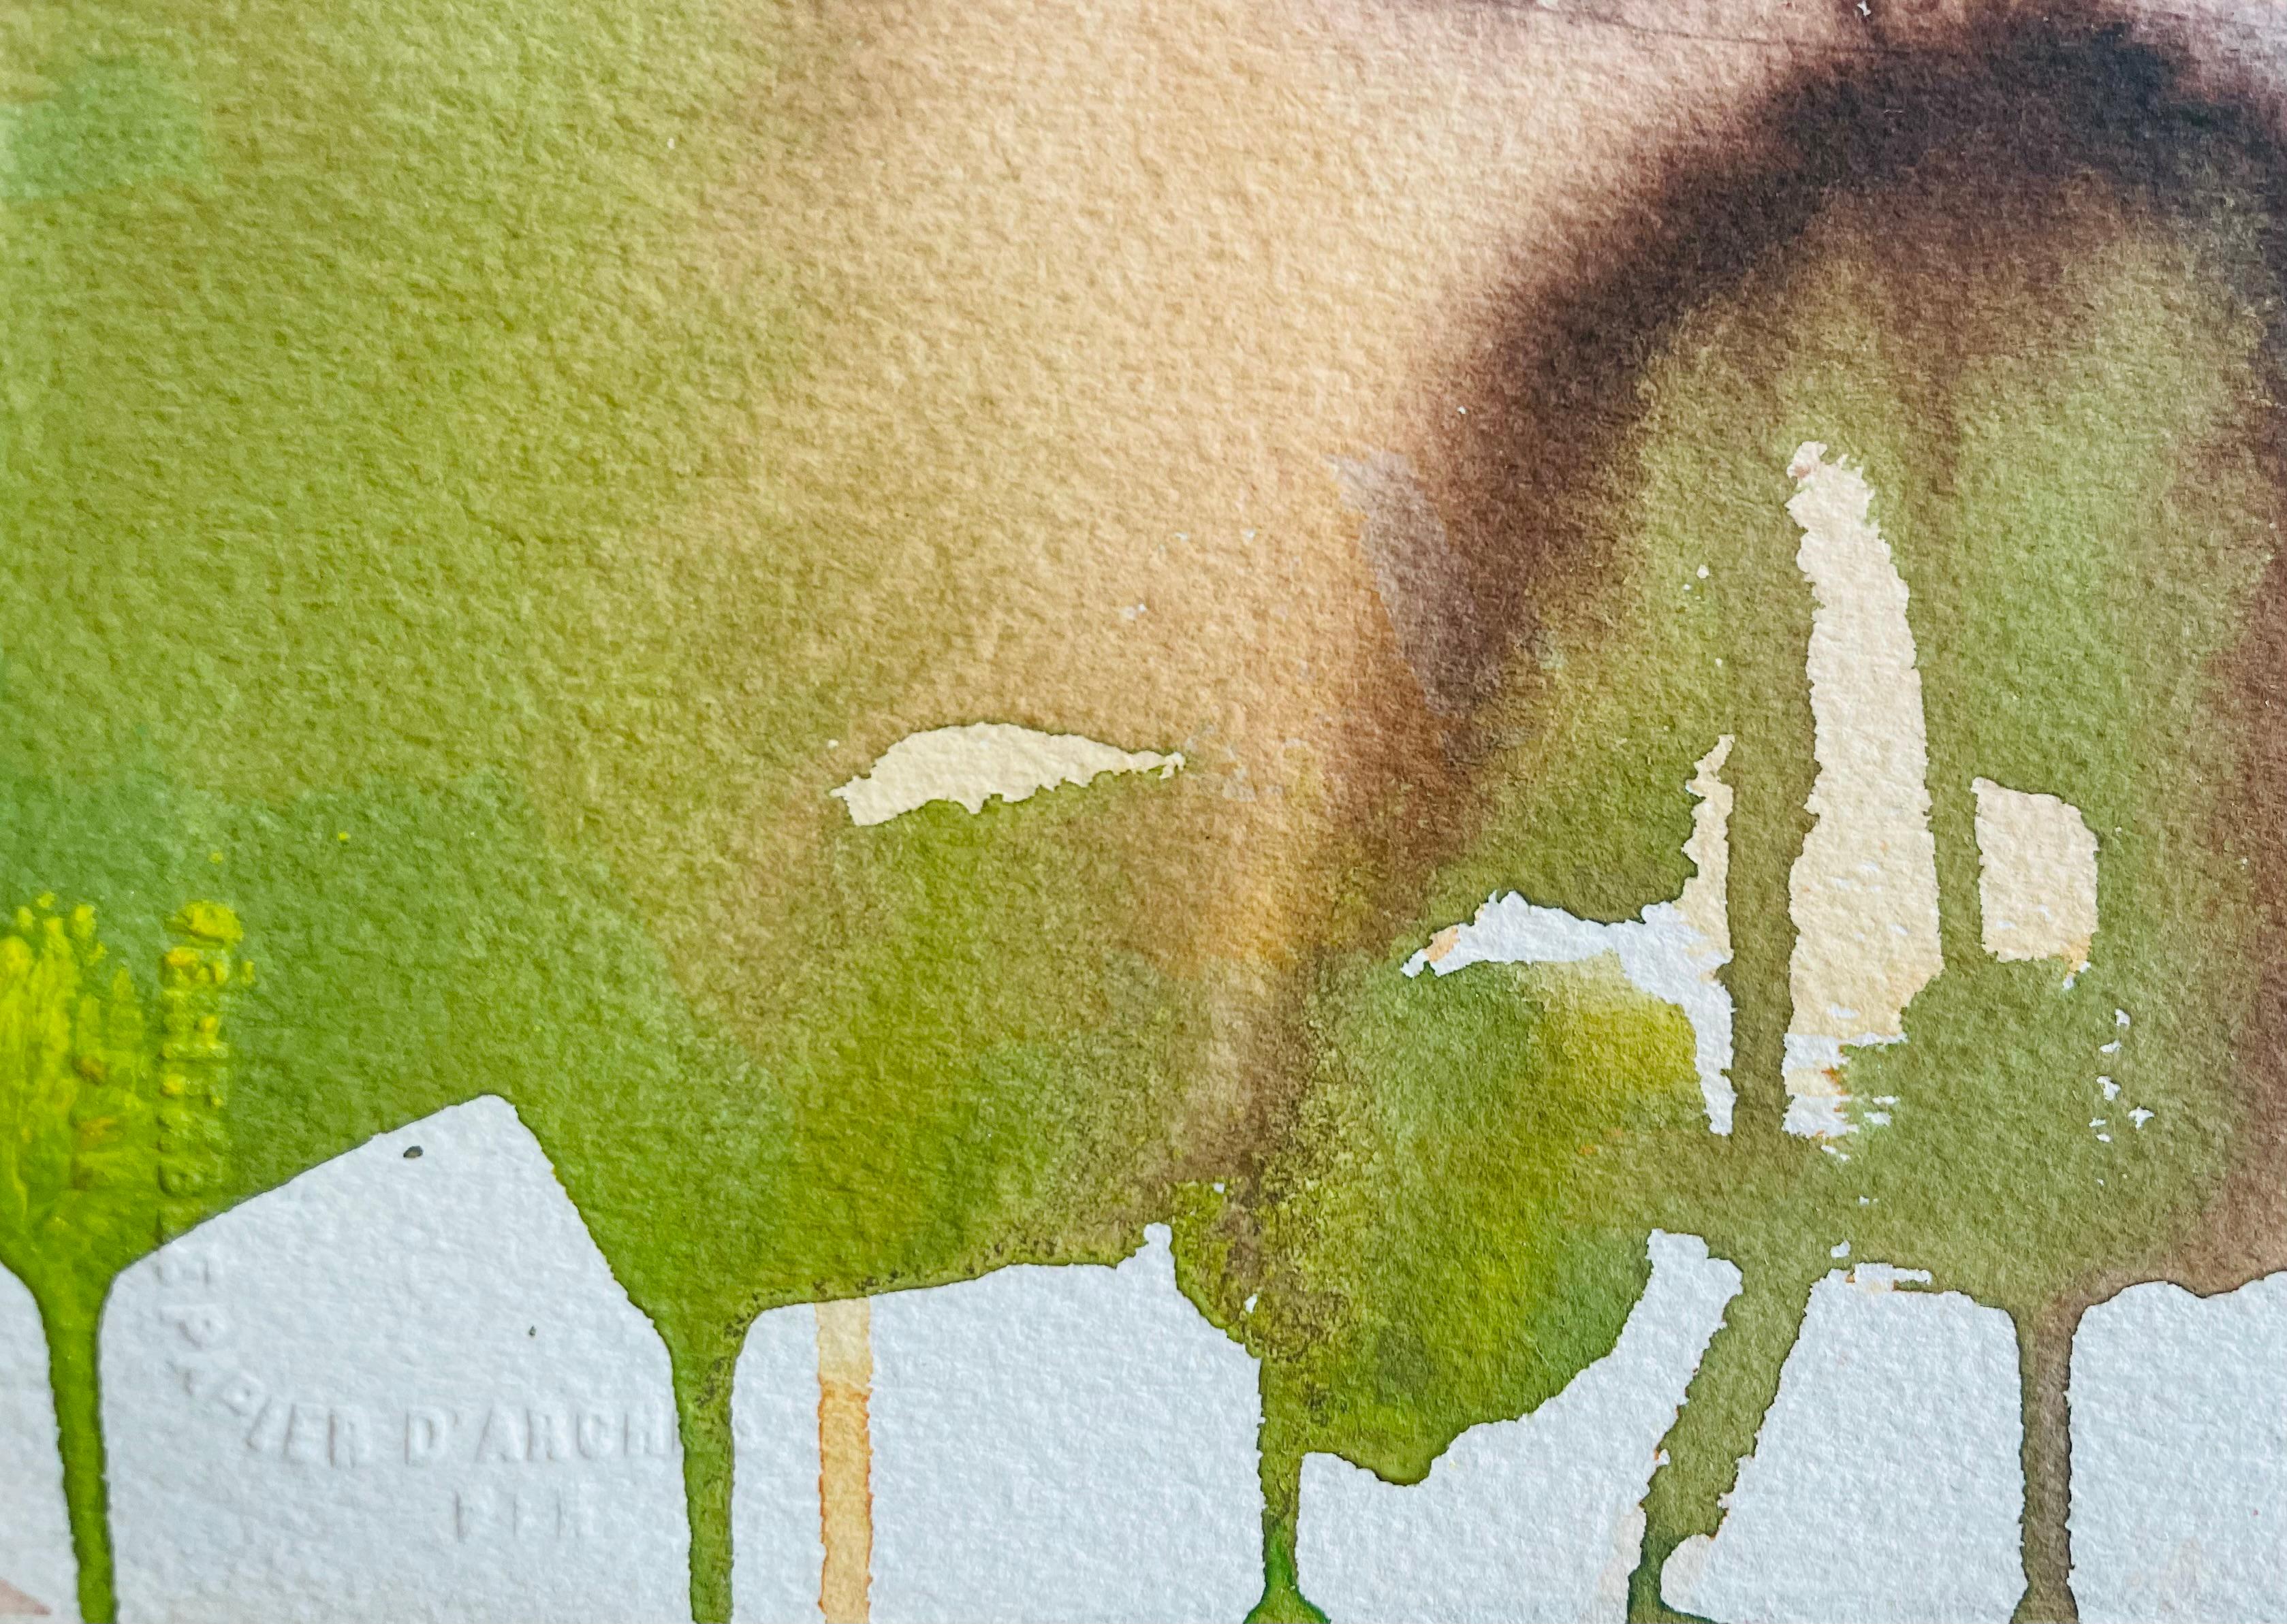 Peinture originale de figure à l'encre et à l'aquarelle du célèbre paysagiste californien du XXe siècle, Ronald Shap. Esquisse d'une femme nue allongée avec des lavis d'orange, de pêche et de vert d'herbe. Cette peinture fait partie de la série